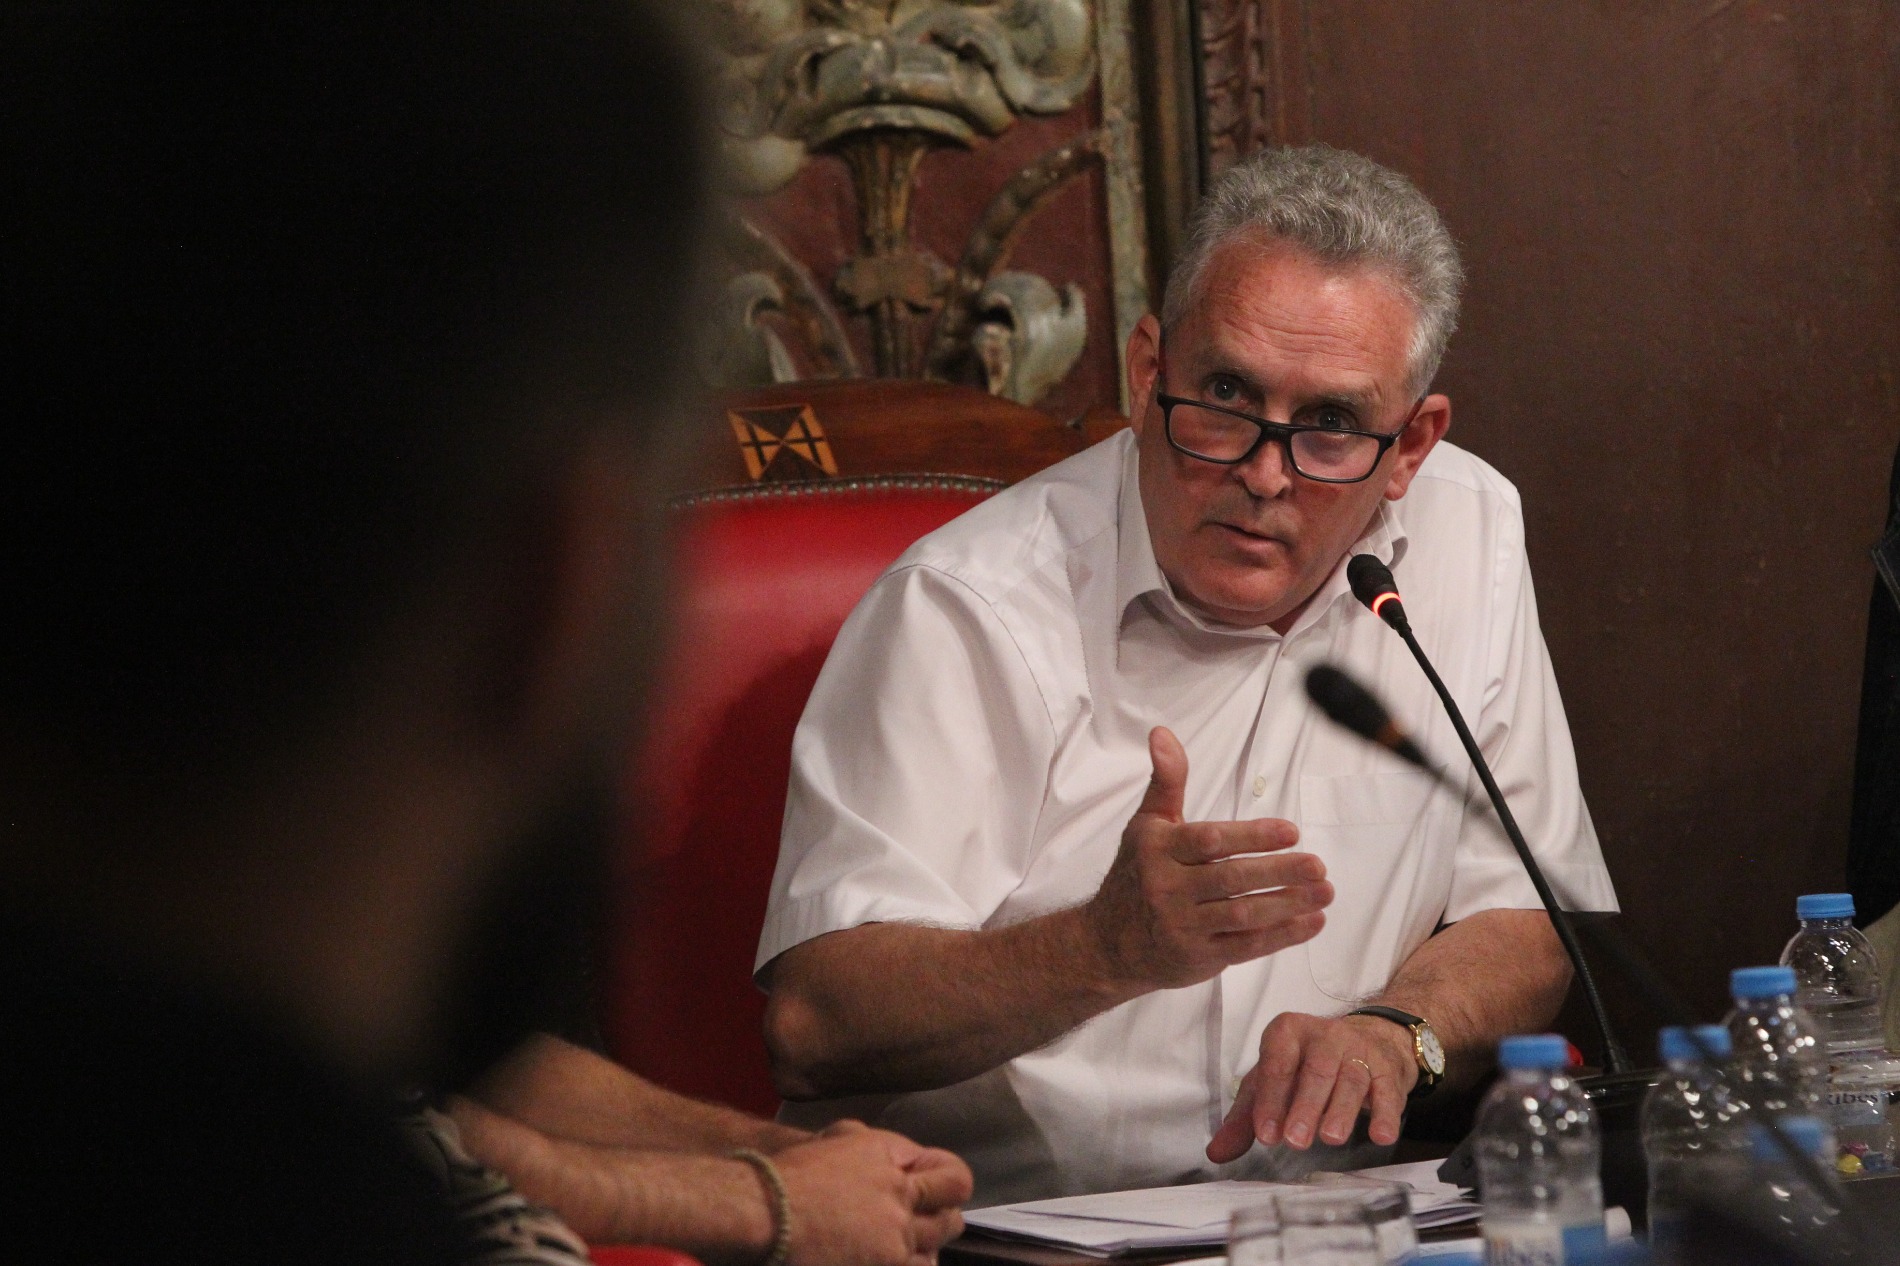 El regidori de Serveis, Antoni Serrat, ha defensat la posició del consistori i ha deixat la porta oberta a incloure l'oposició a les negociacions